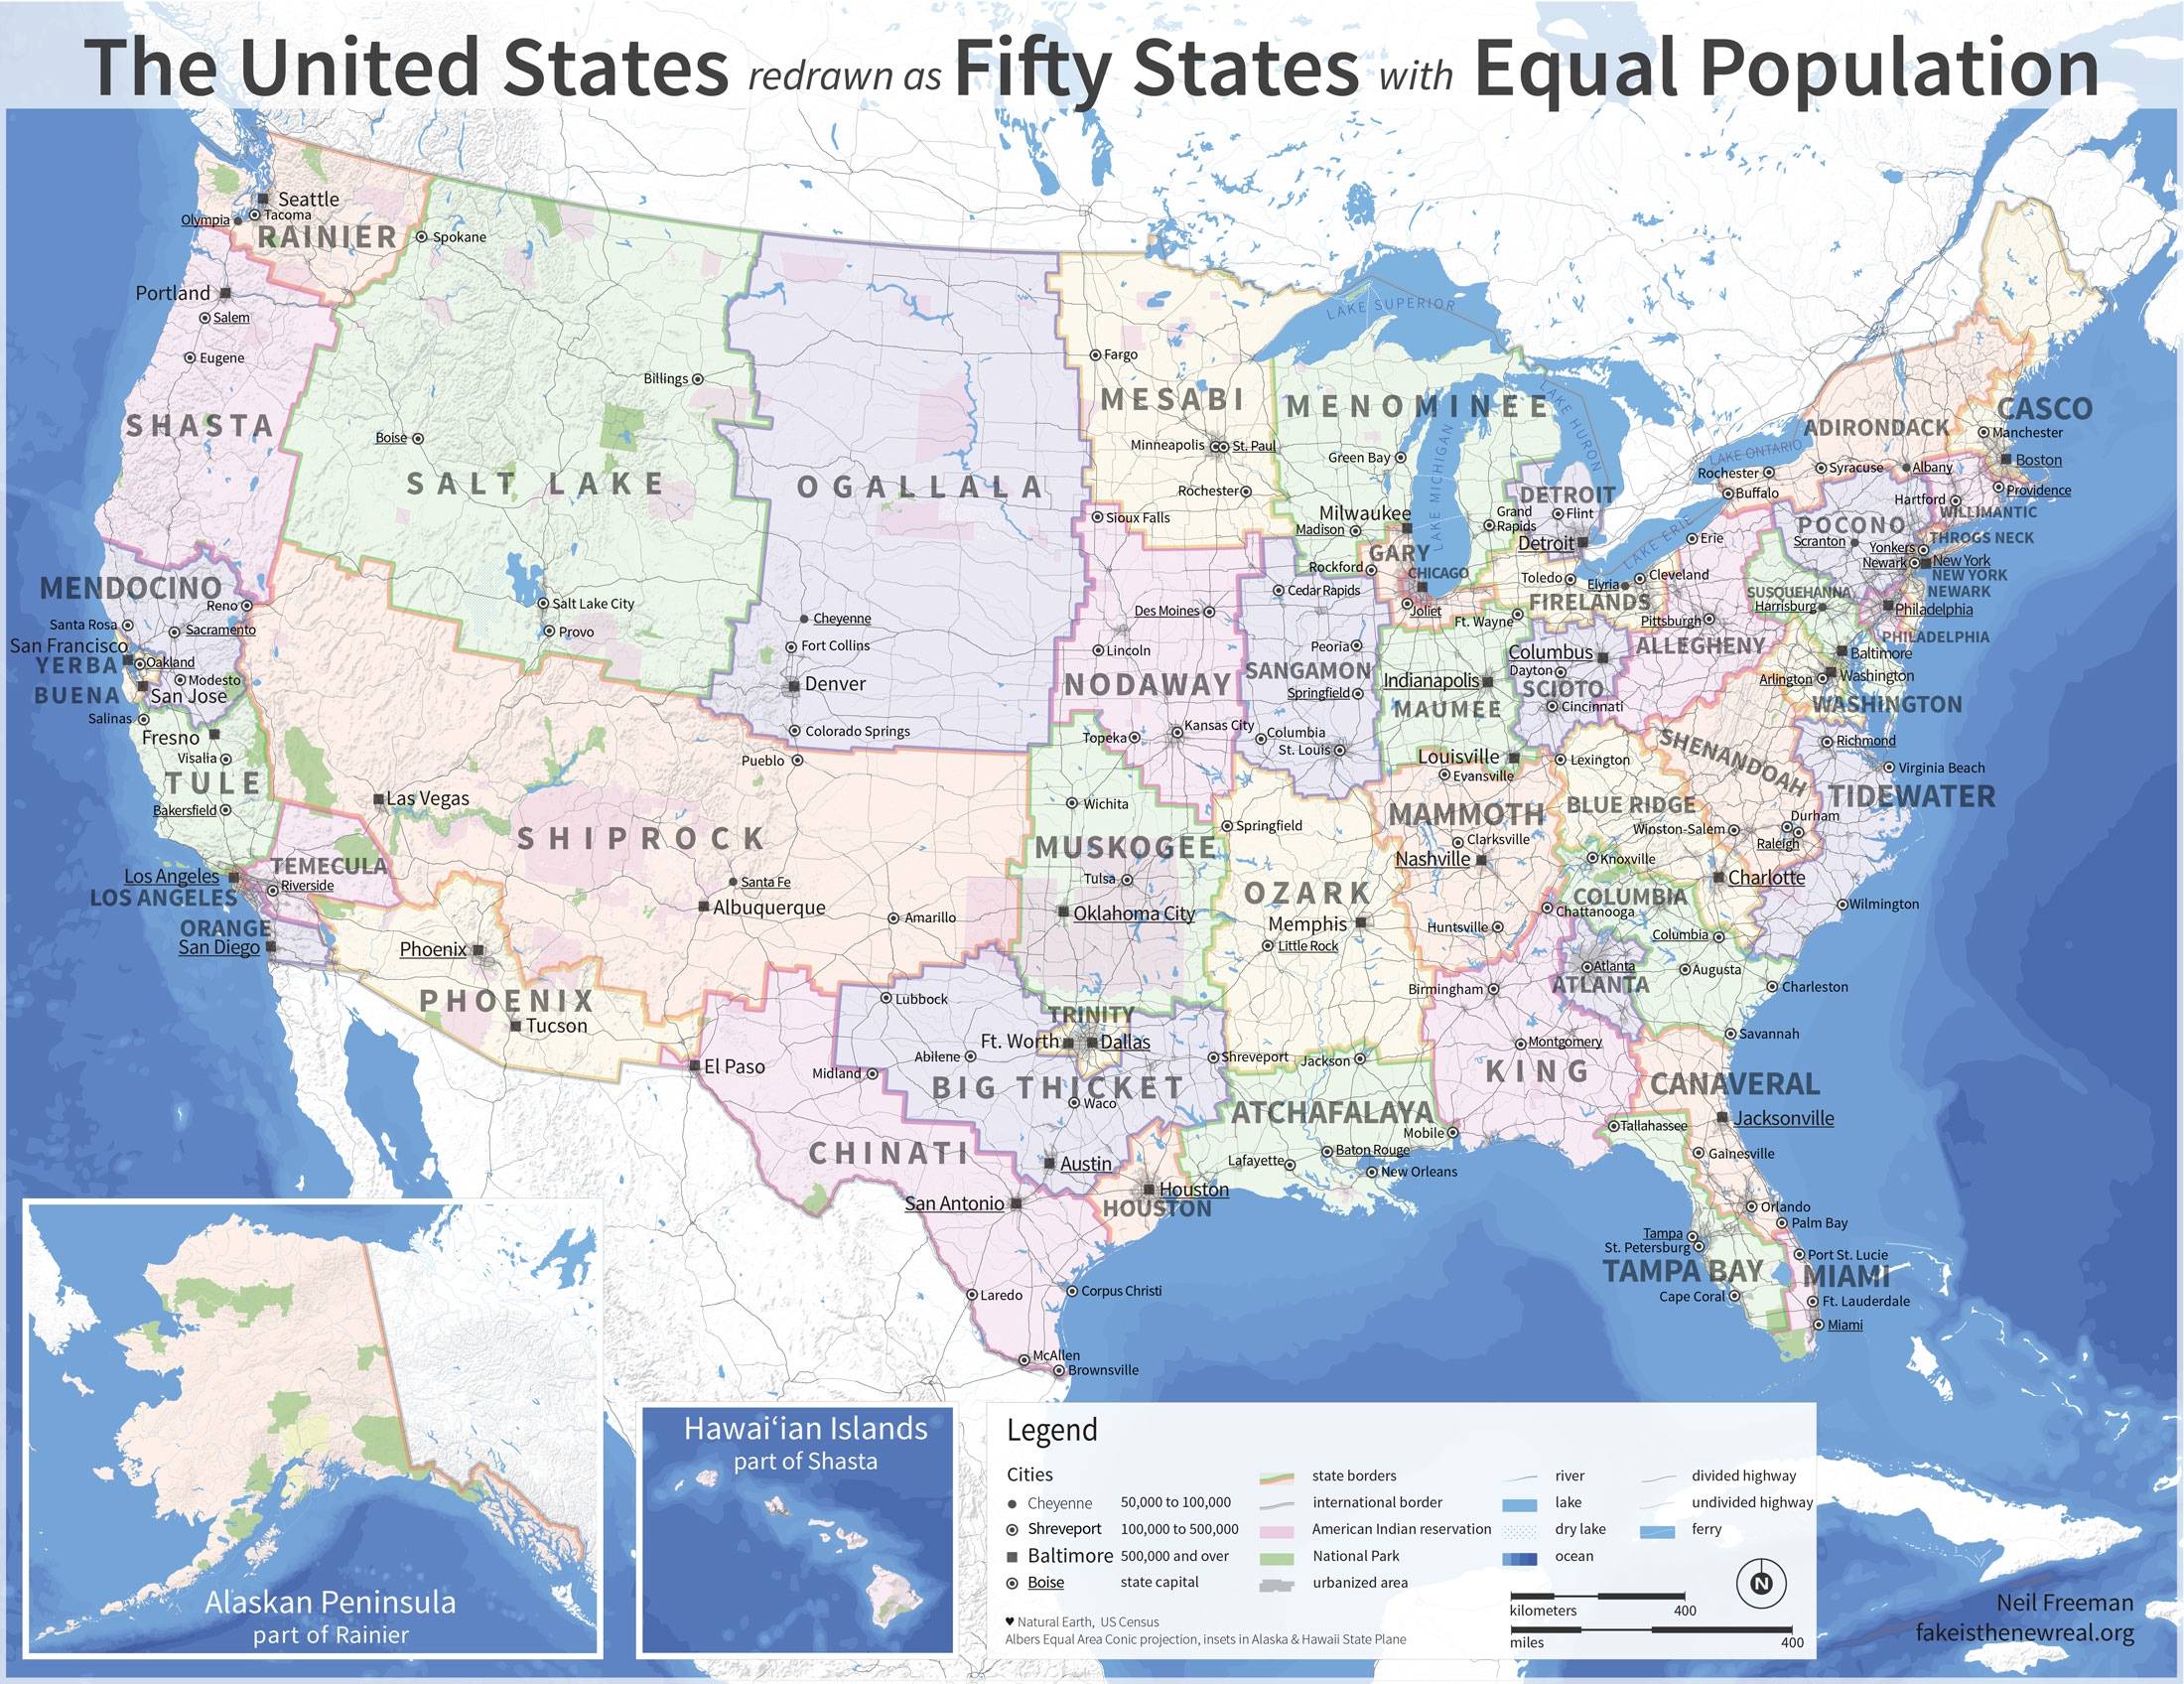 Los Estados Unidos de igual población (2012)